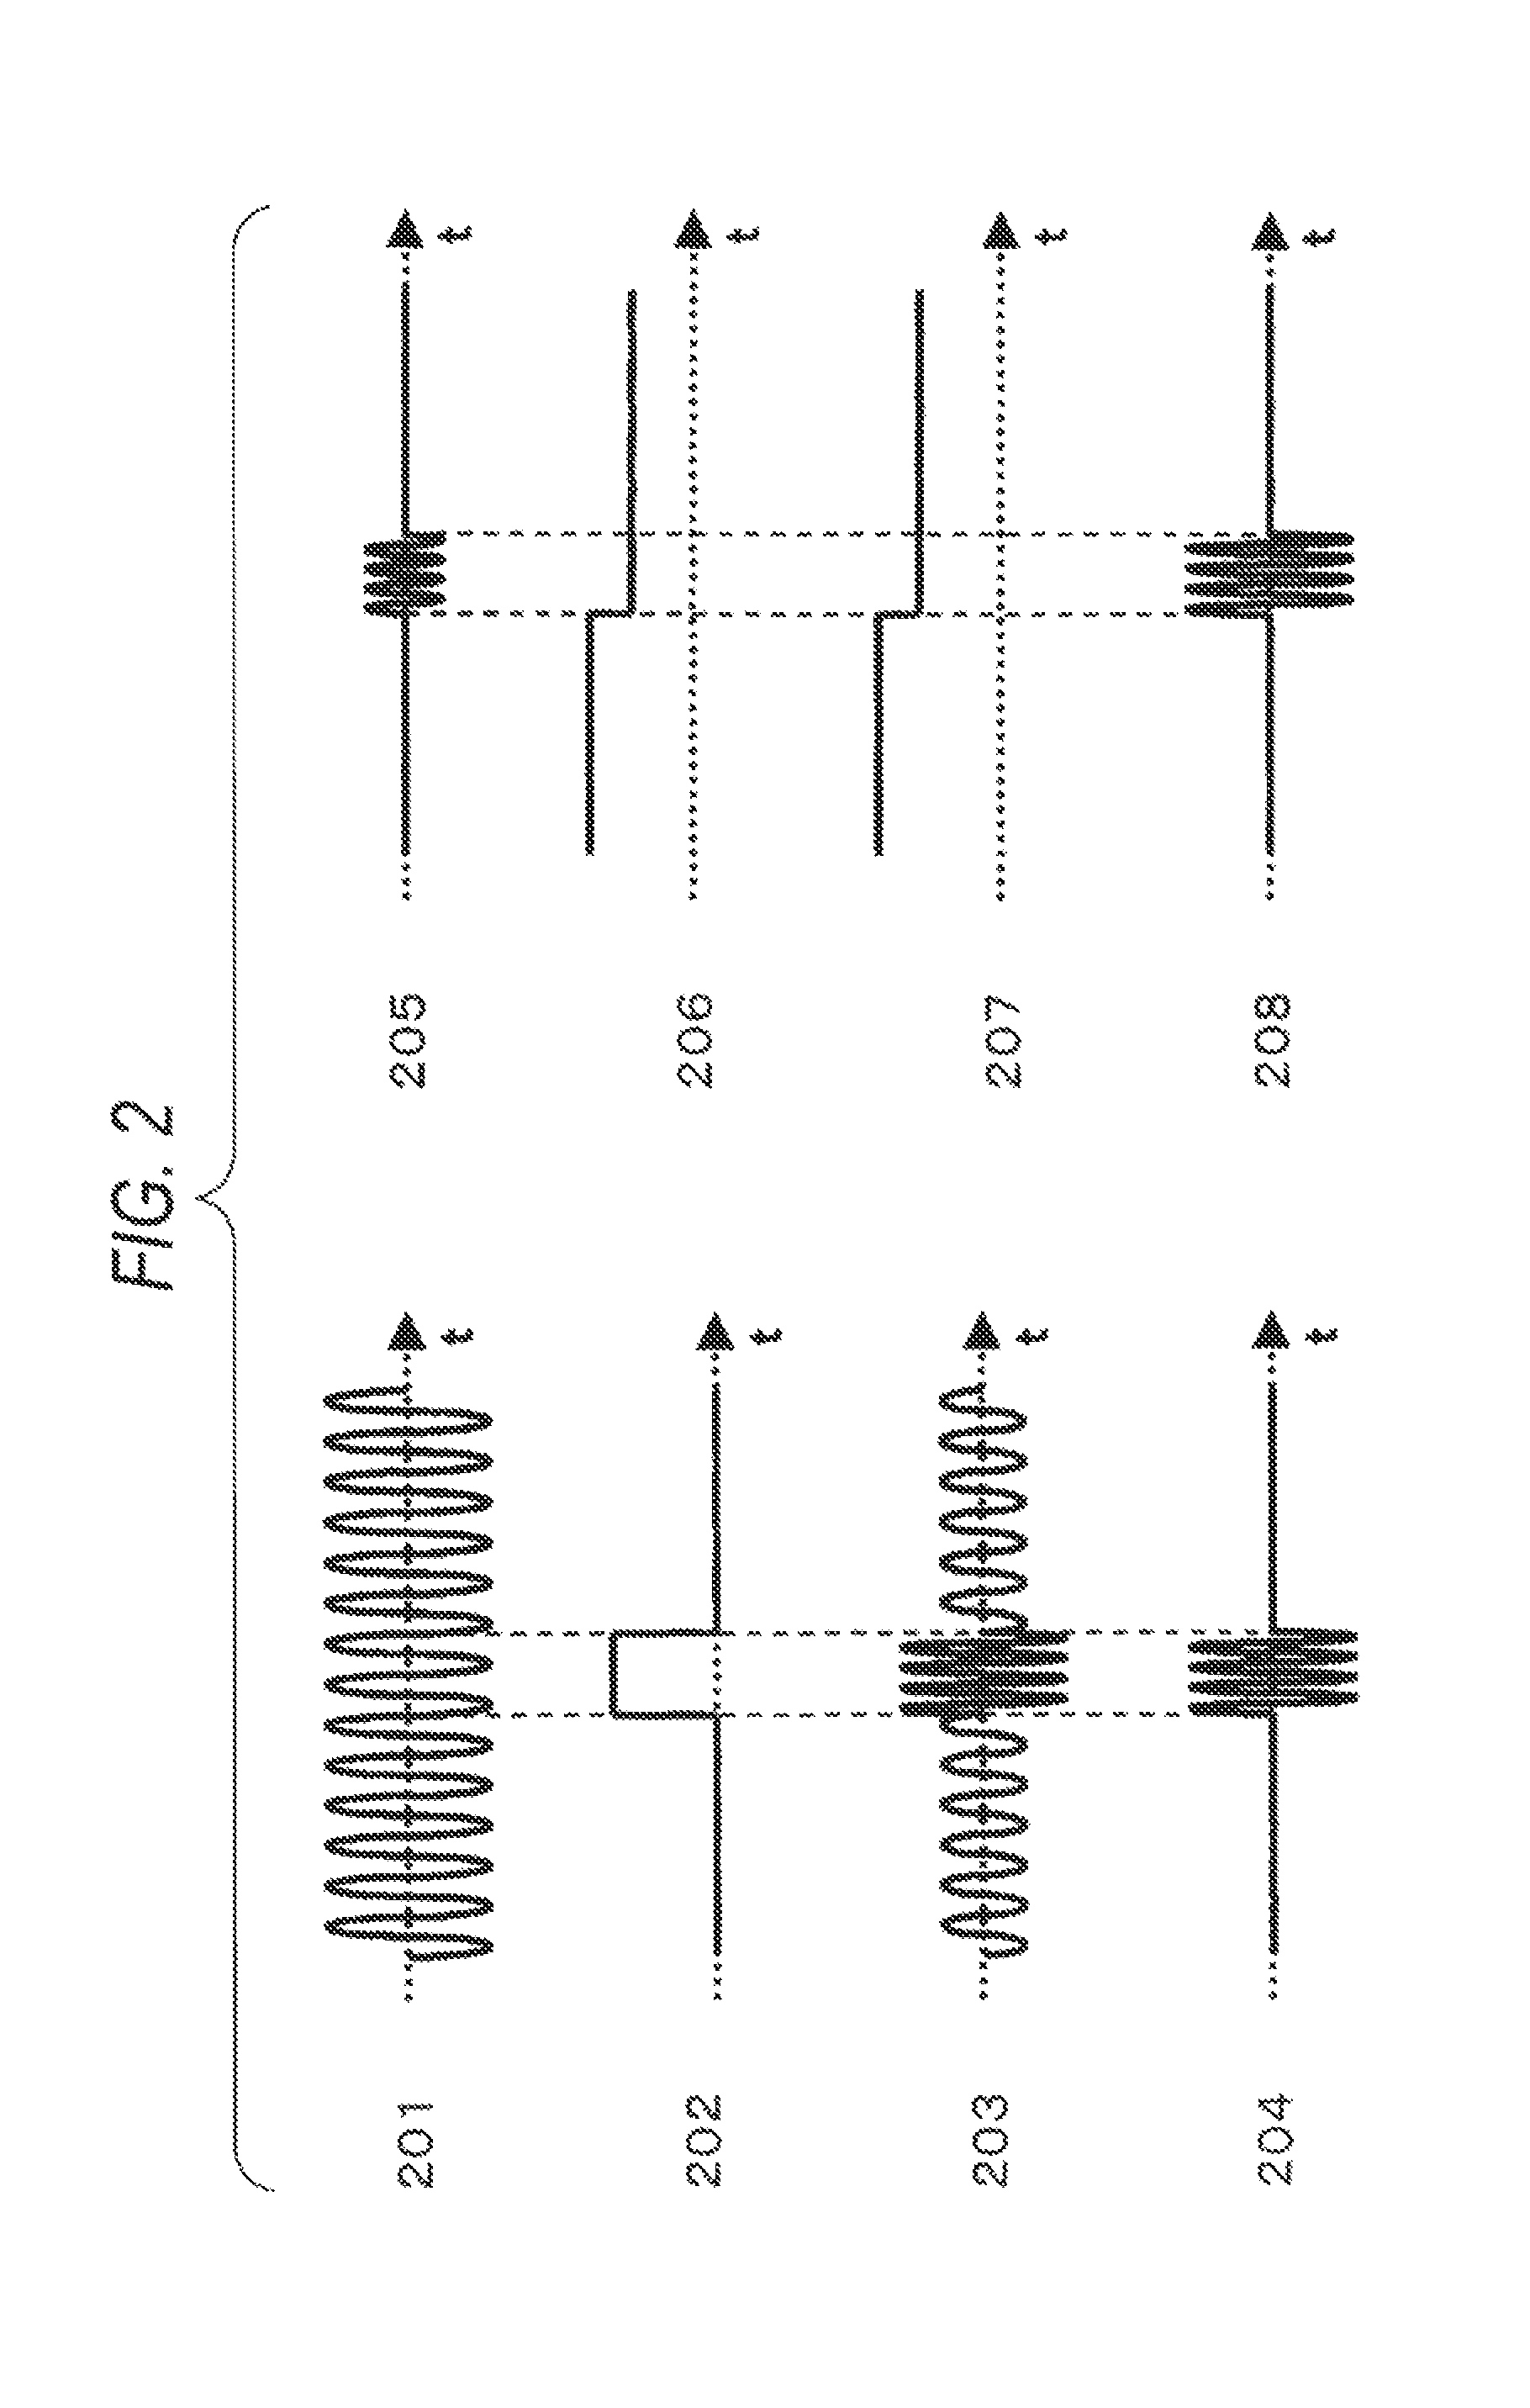 Signal modulator